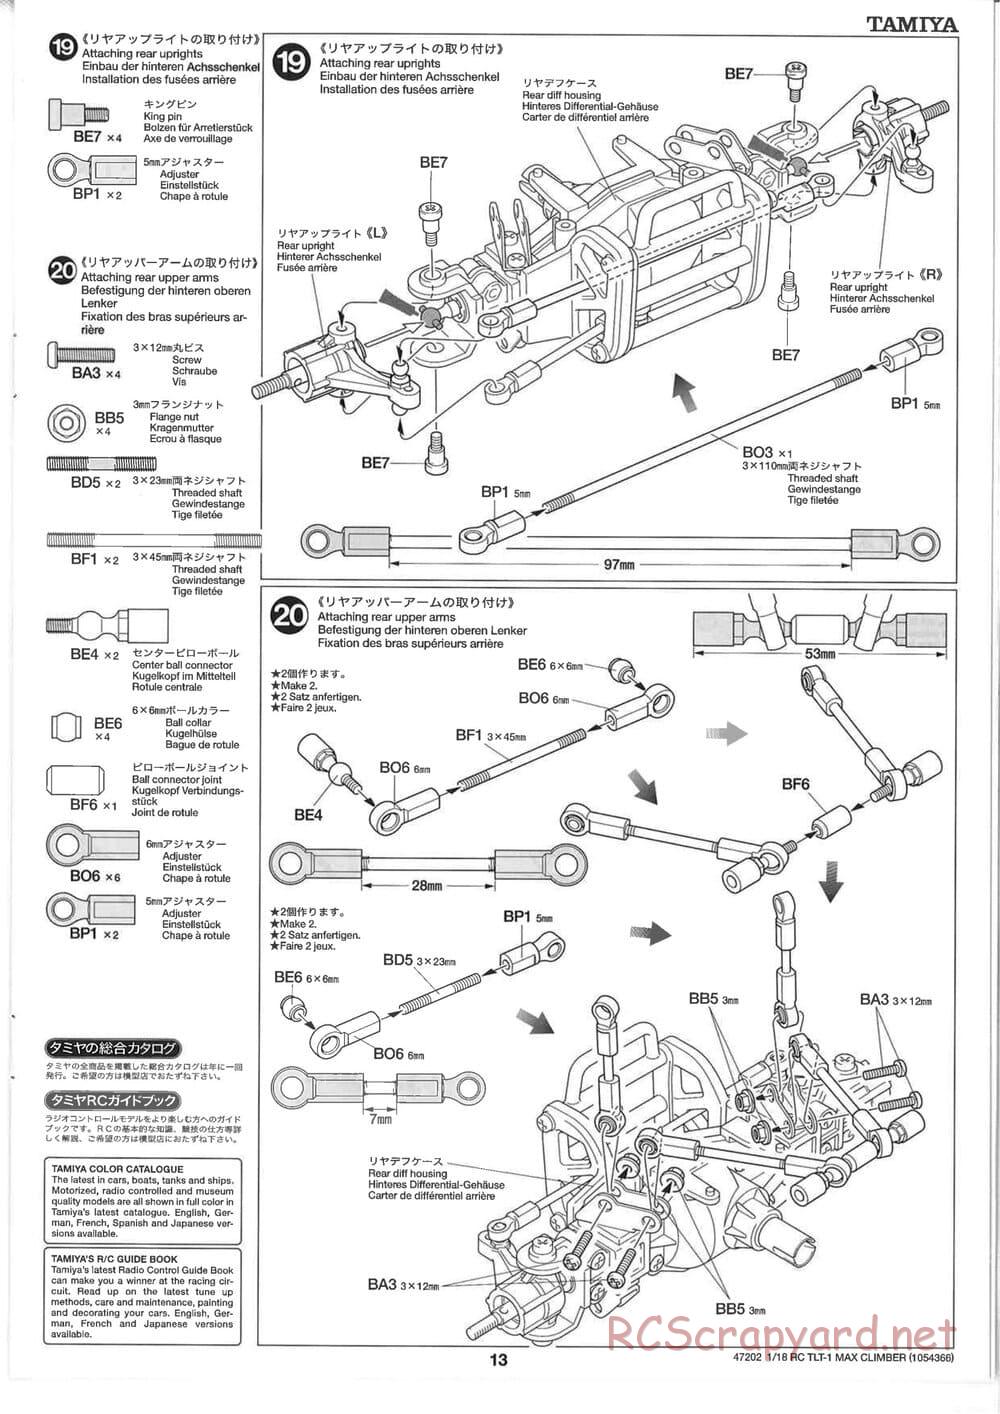 Tamiya - Max Climber - TLT-1 Chassis - Manual - Page 13